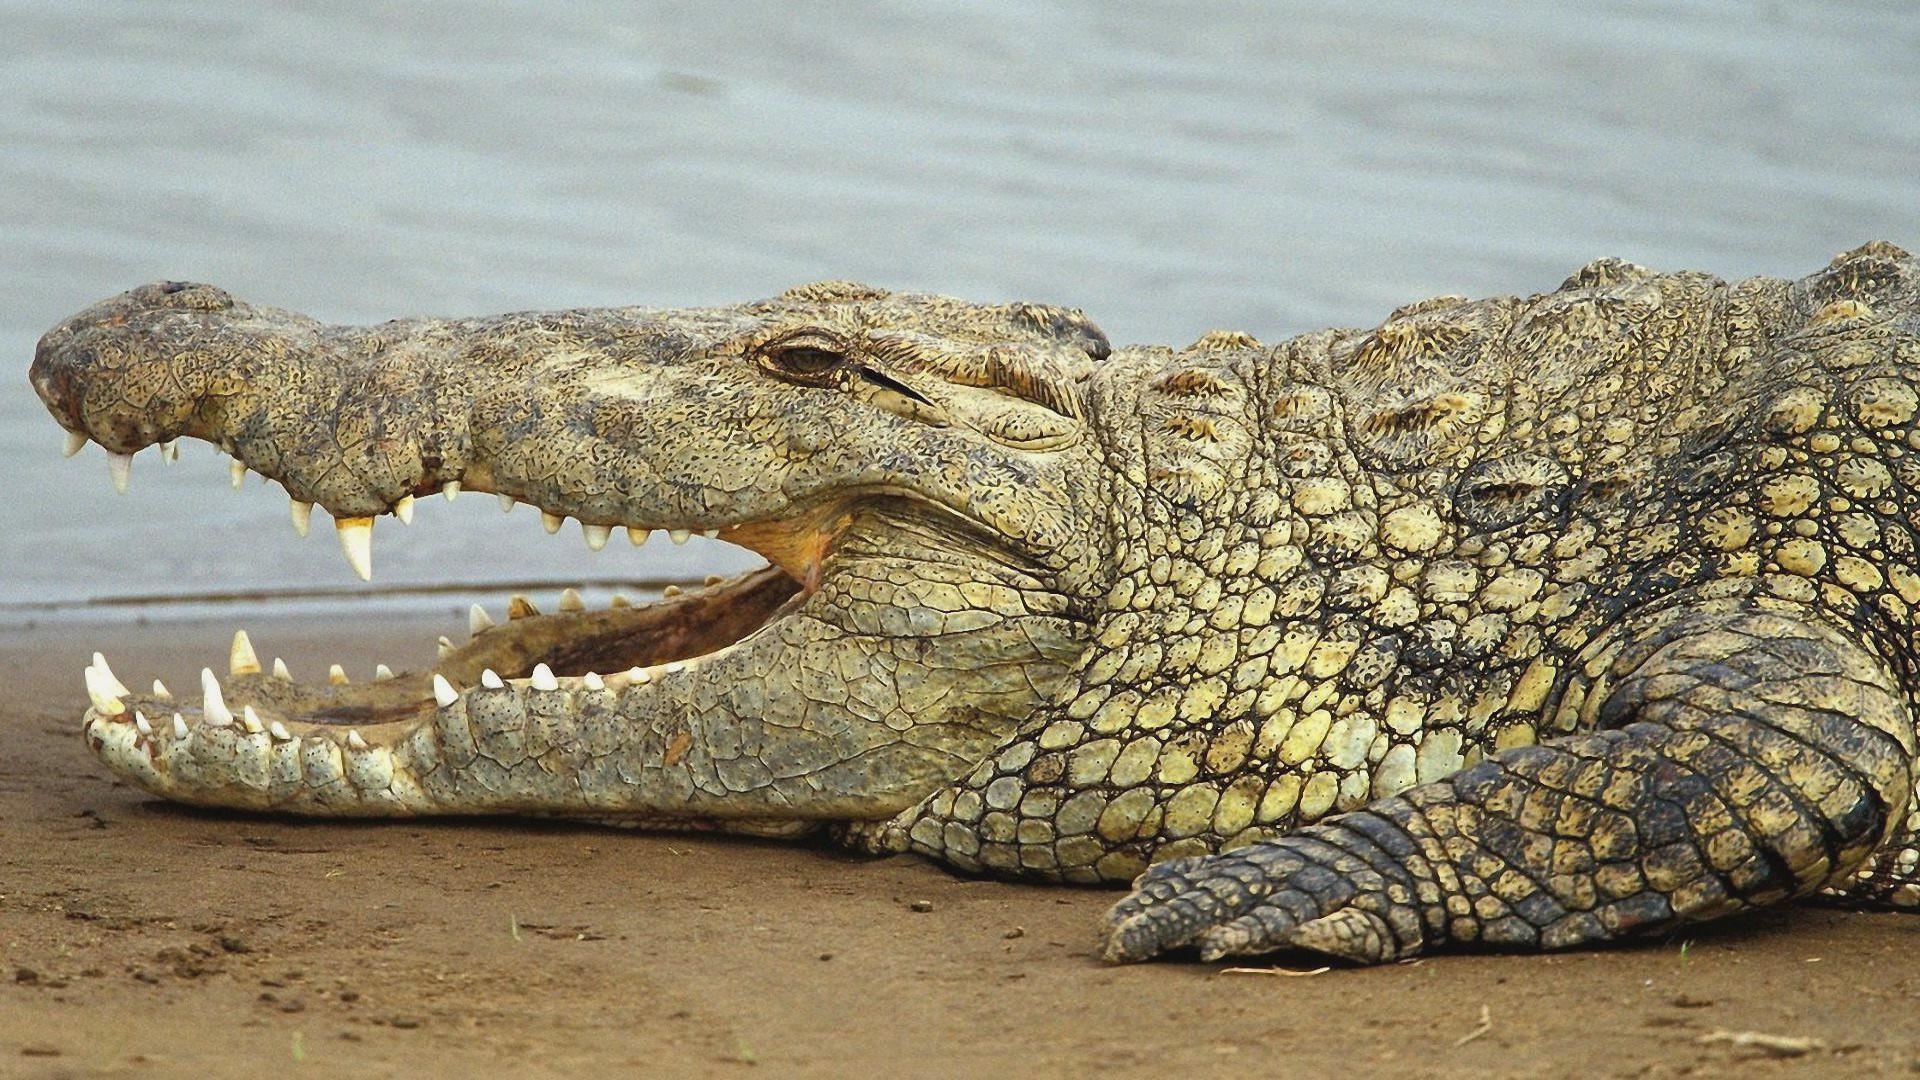 Saltwater Crocodile wallpaper Crocodile Picture Photo American